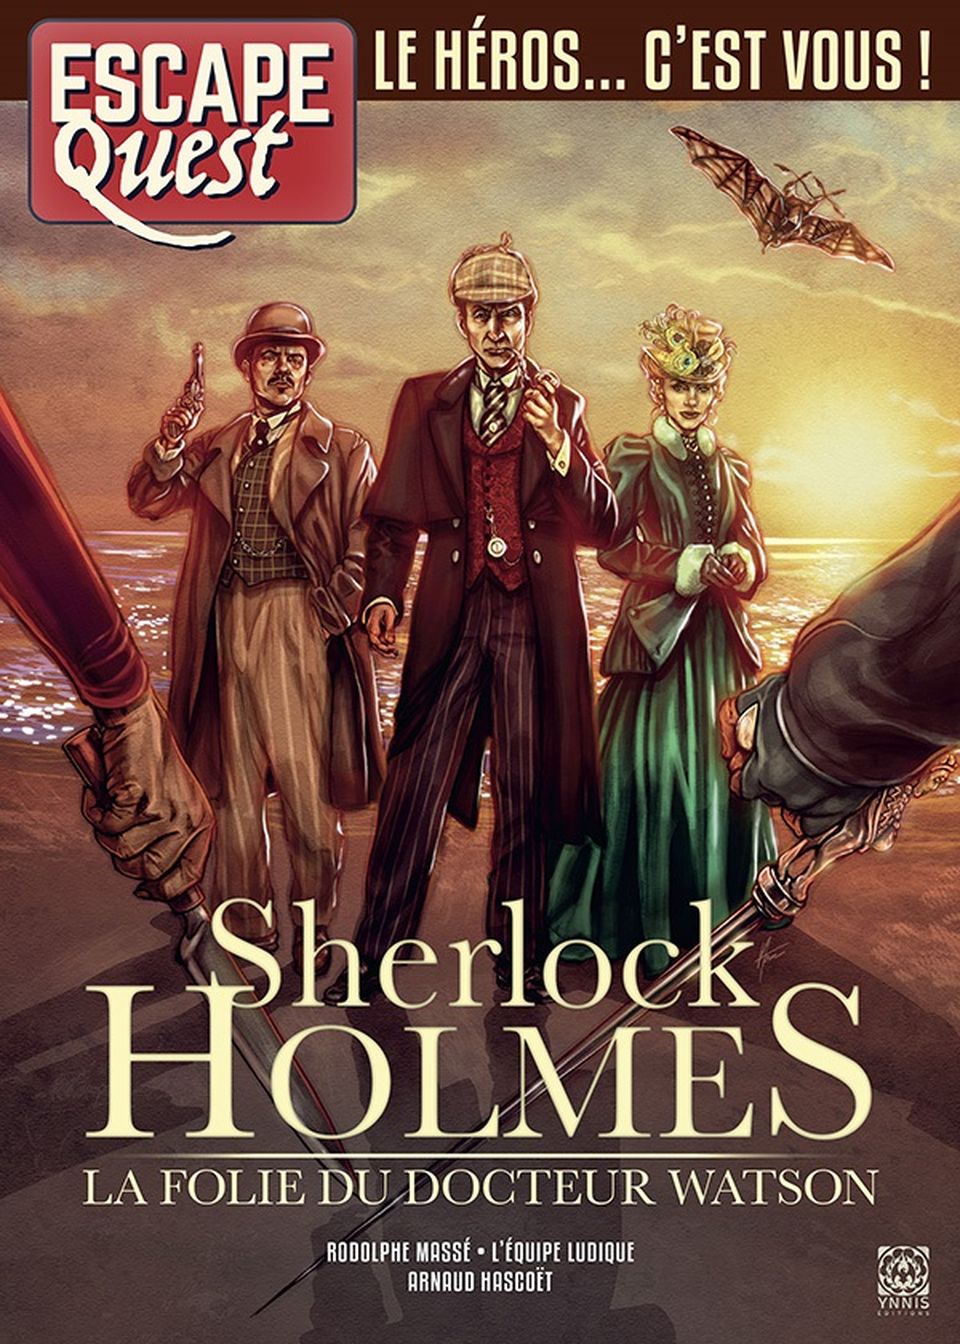 Escape Quest : Sherlock Holmes, la folie du docteur Watson image